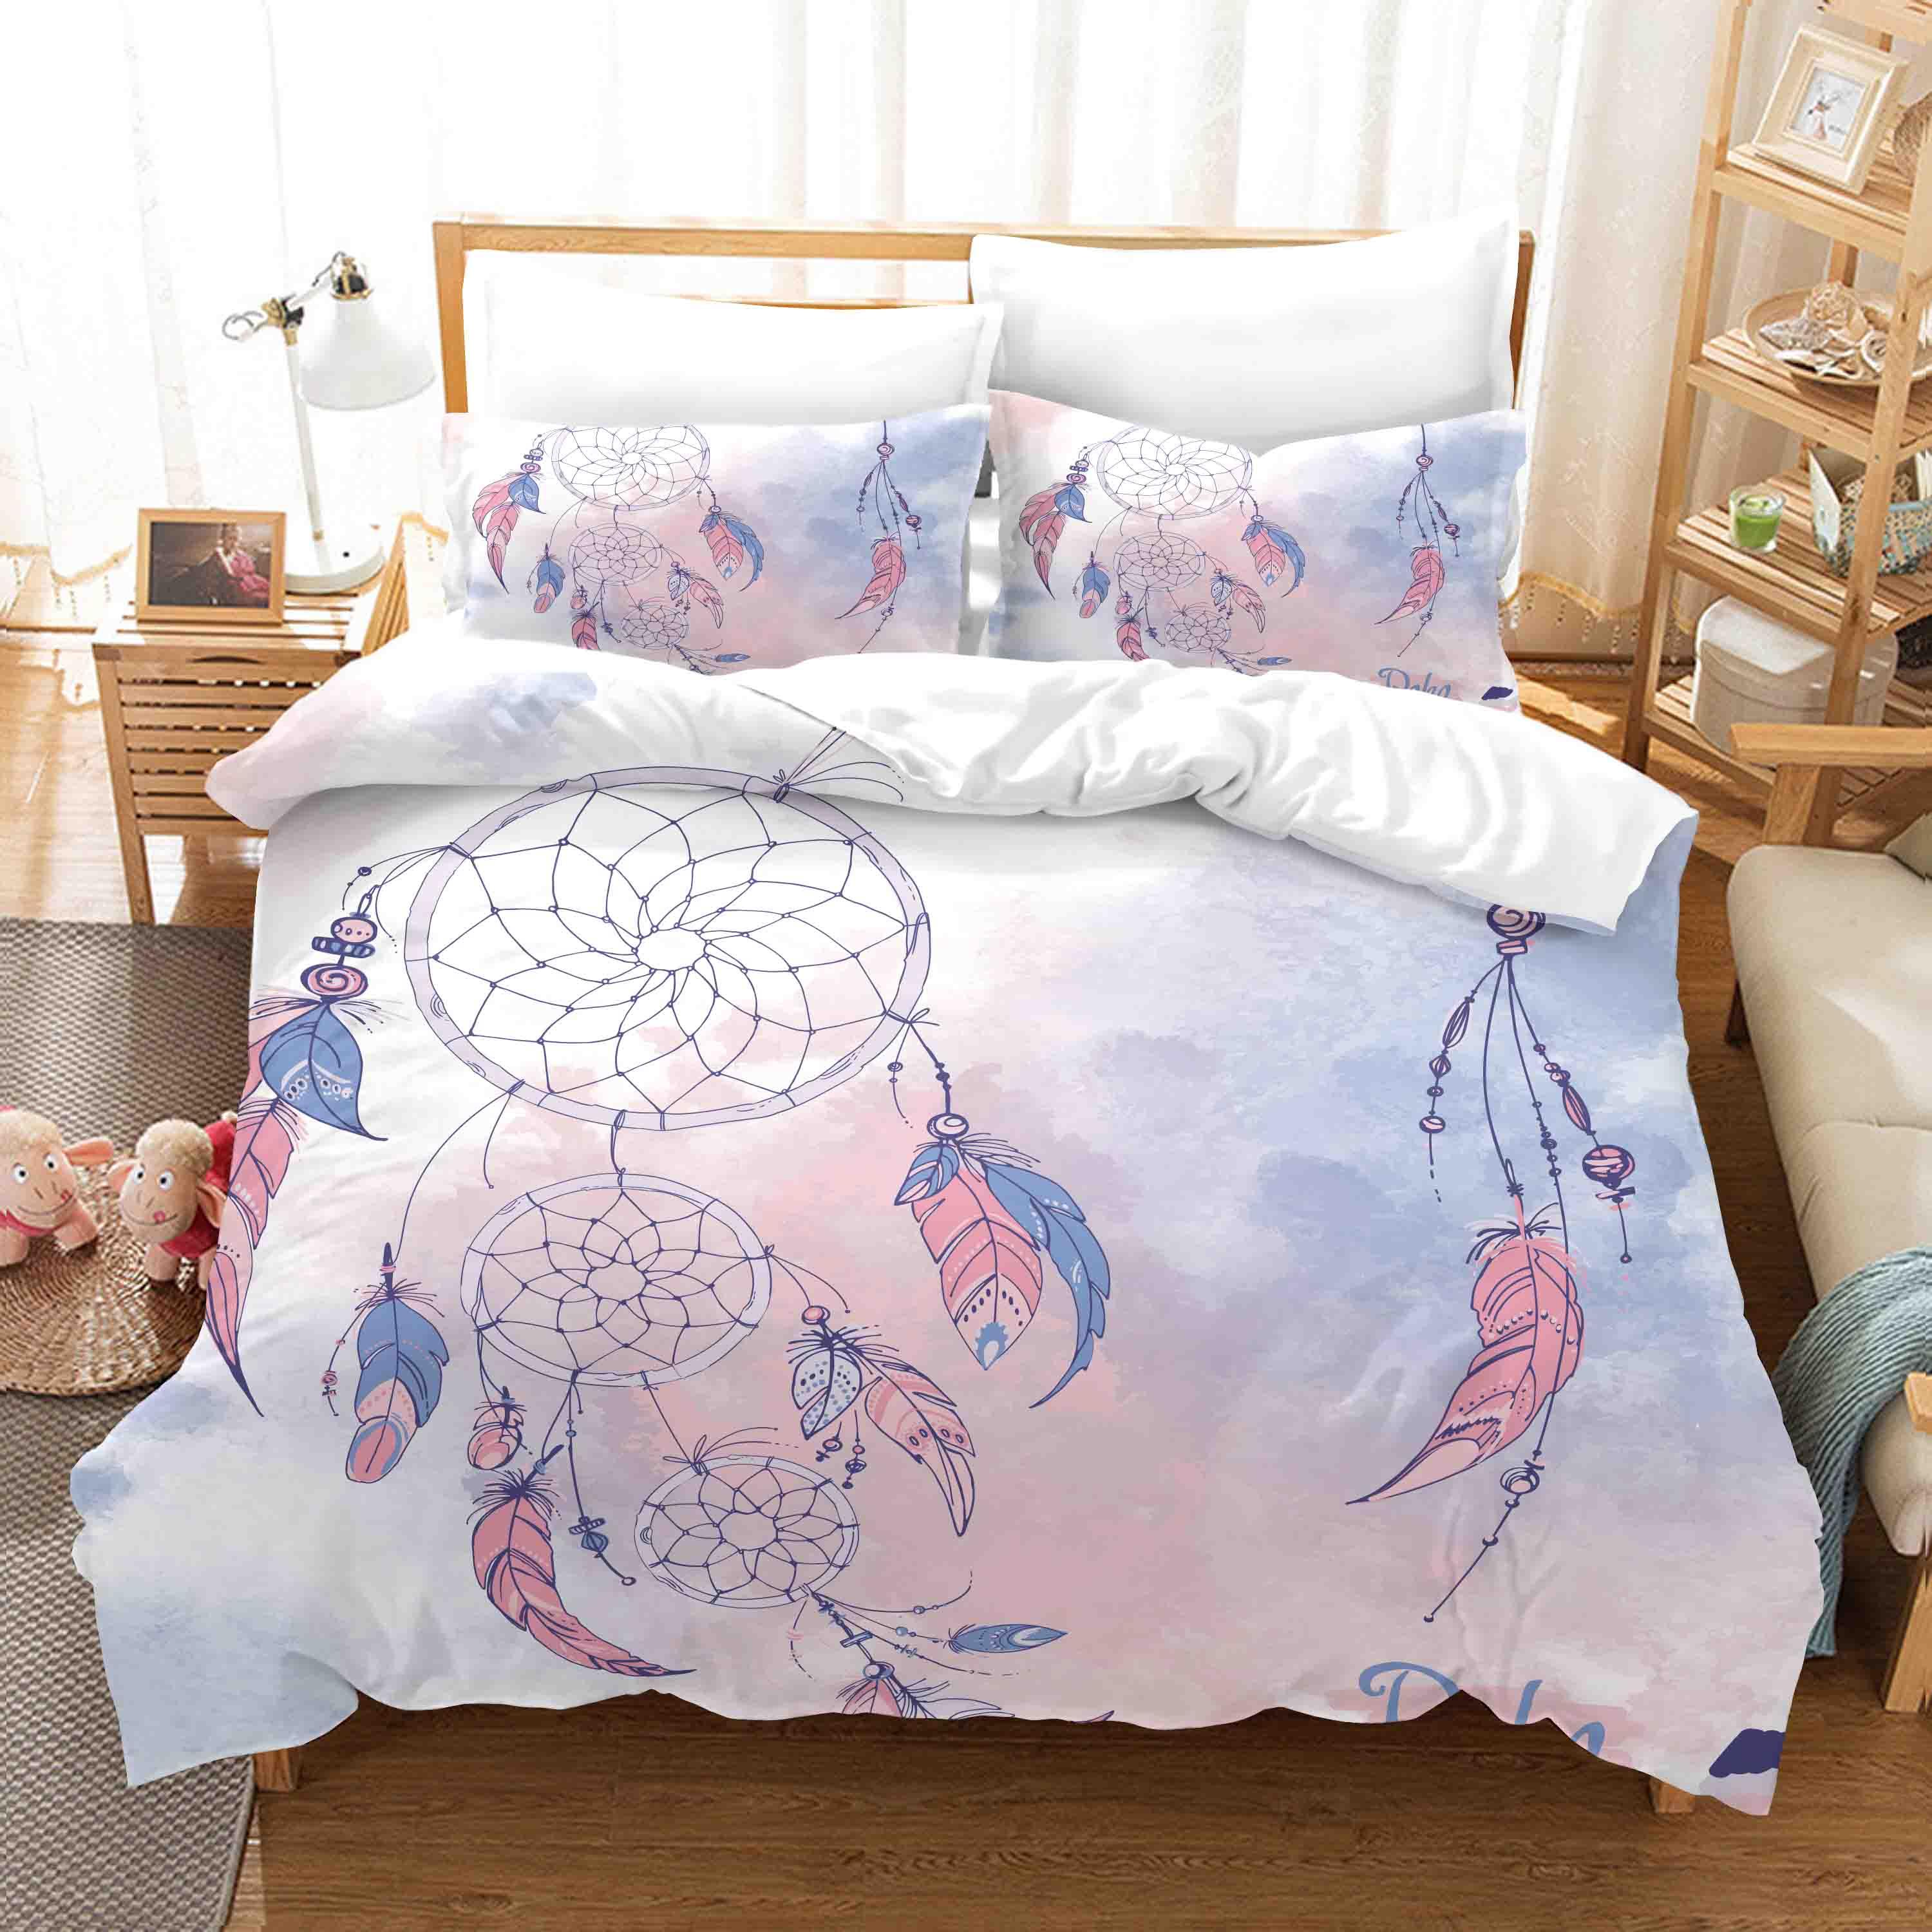 3D Watercolor Dream Catcher Quilt Cover Set Bedding Set Duvet Cover Pillowcases WJ 9740- Jess Art Decoration